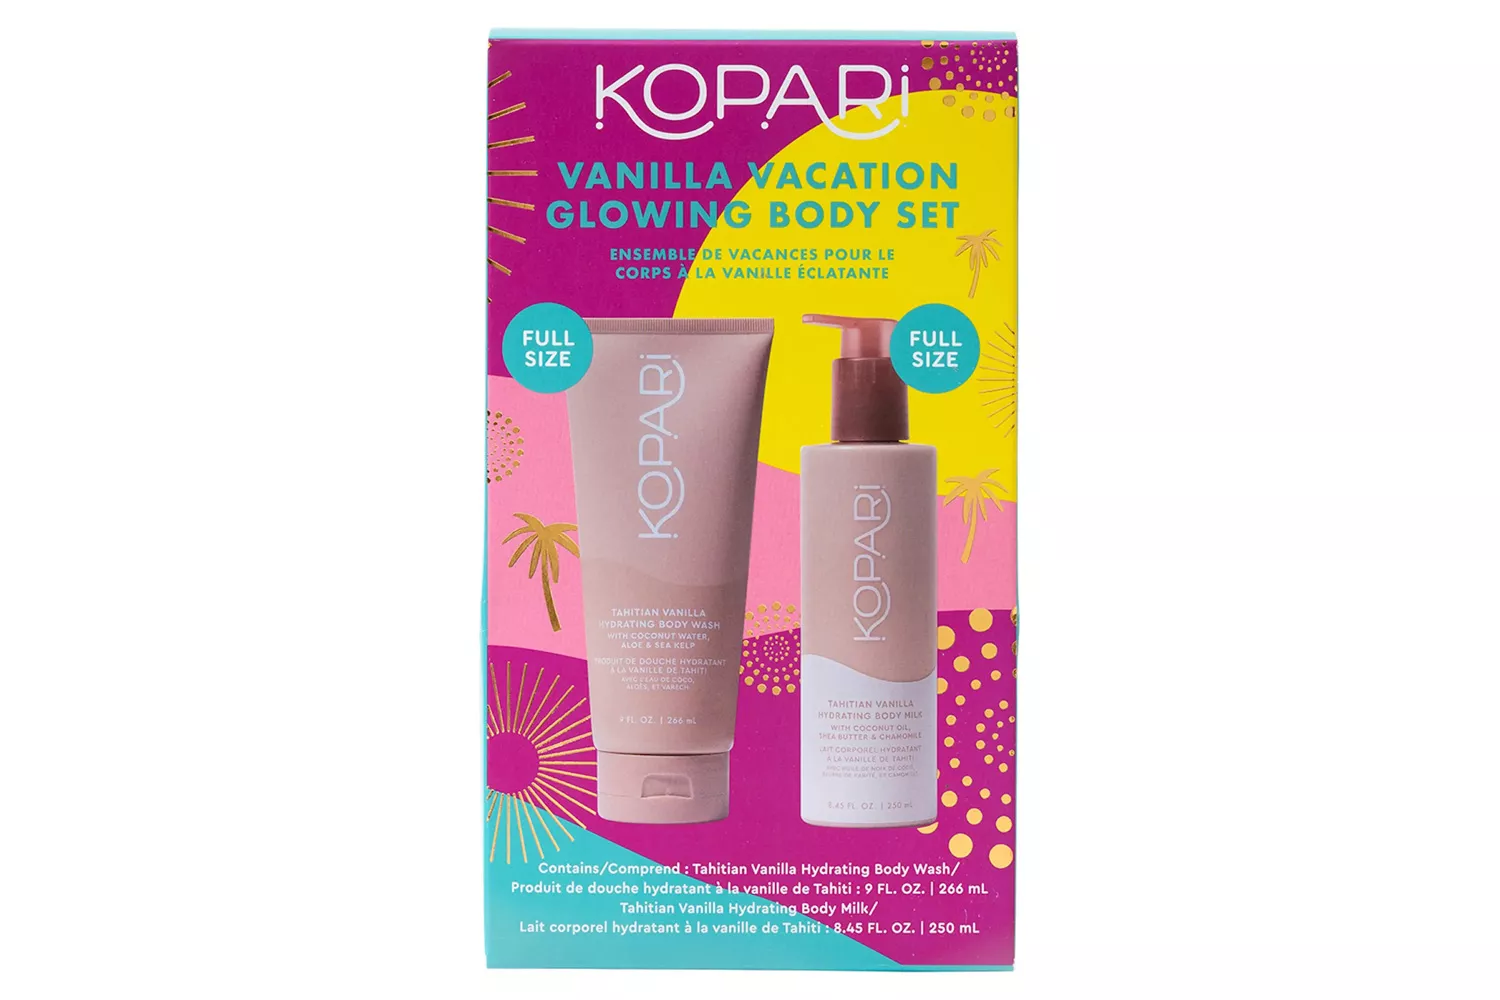 Kopari Glowing Vanilla Vacation Set